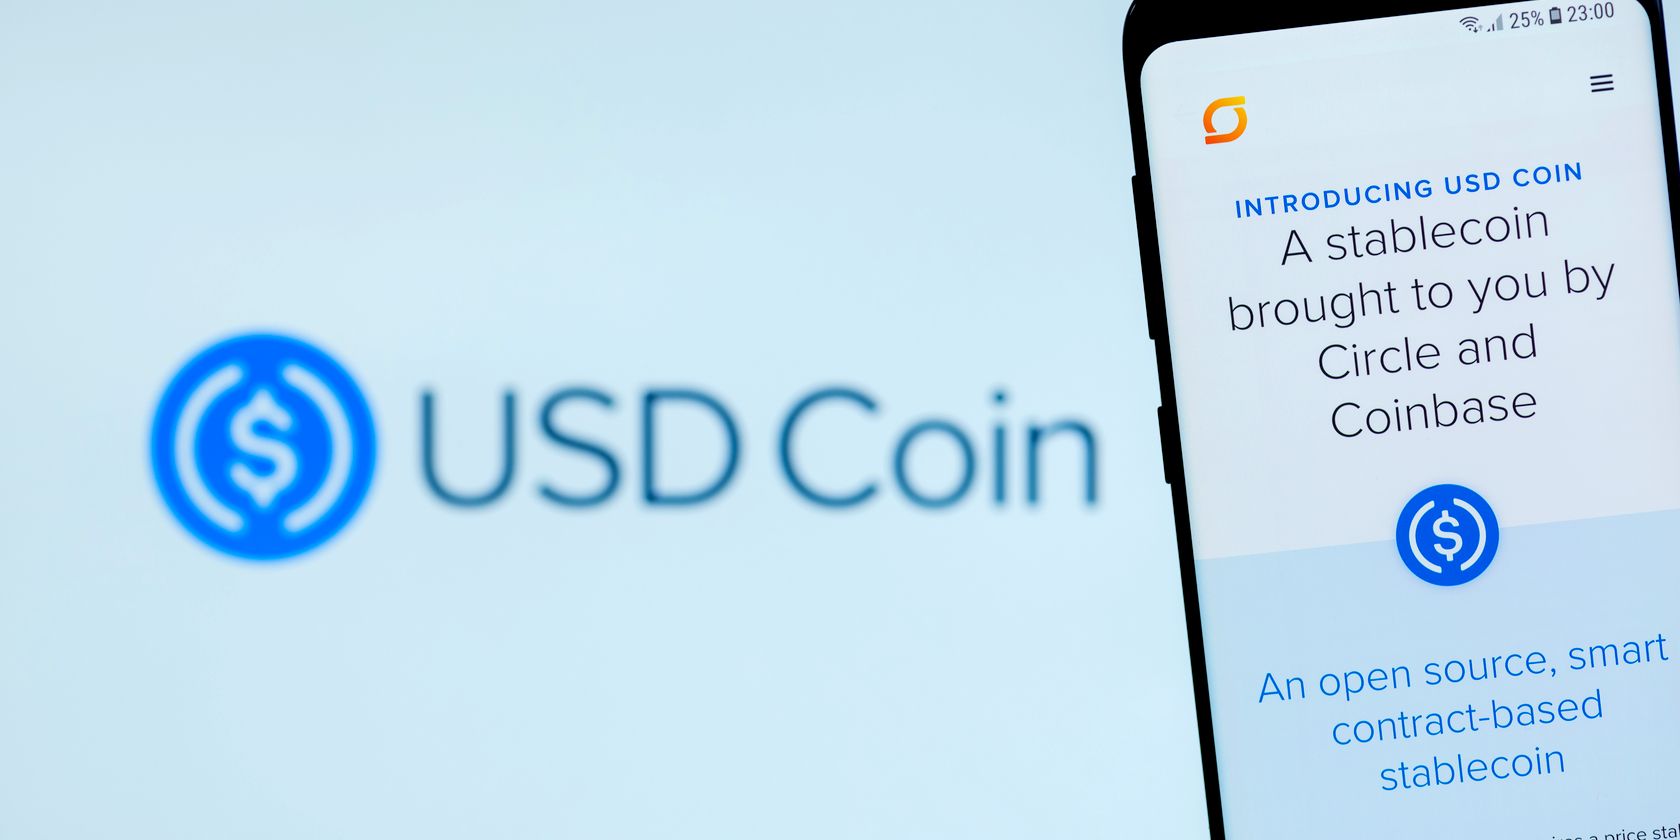 usd coin logo smartphone screen